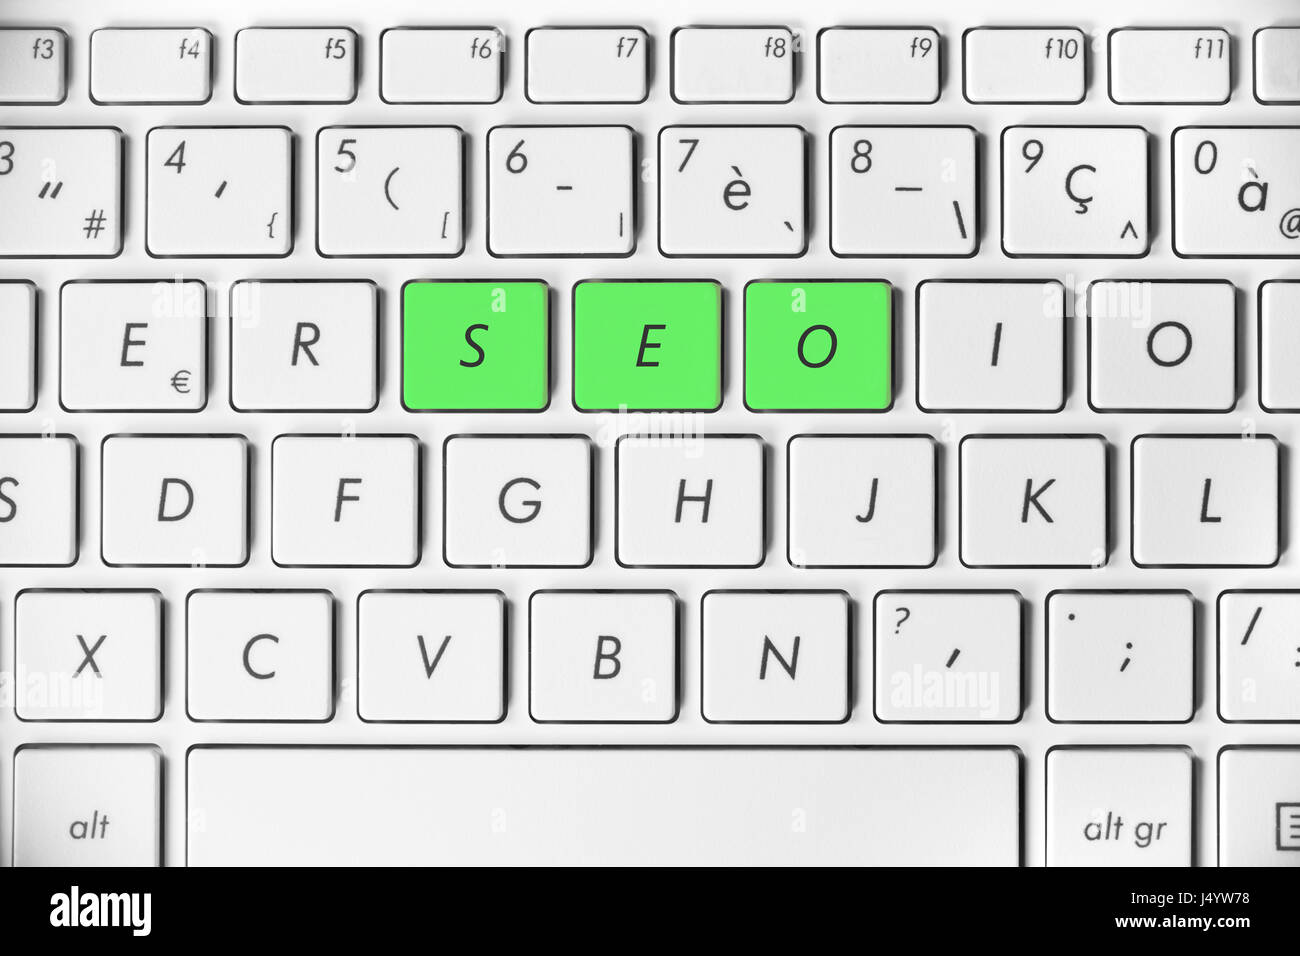 SEO mot écrit sur un clavier d'ordinateur blanc, concept d'optimisation de search engine, rang de site web internet ou le marketing en ligne Banque D'Images